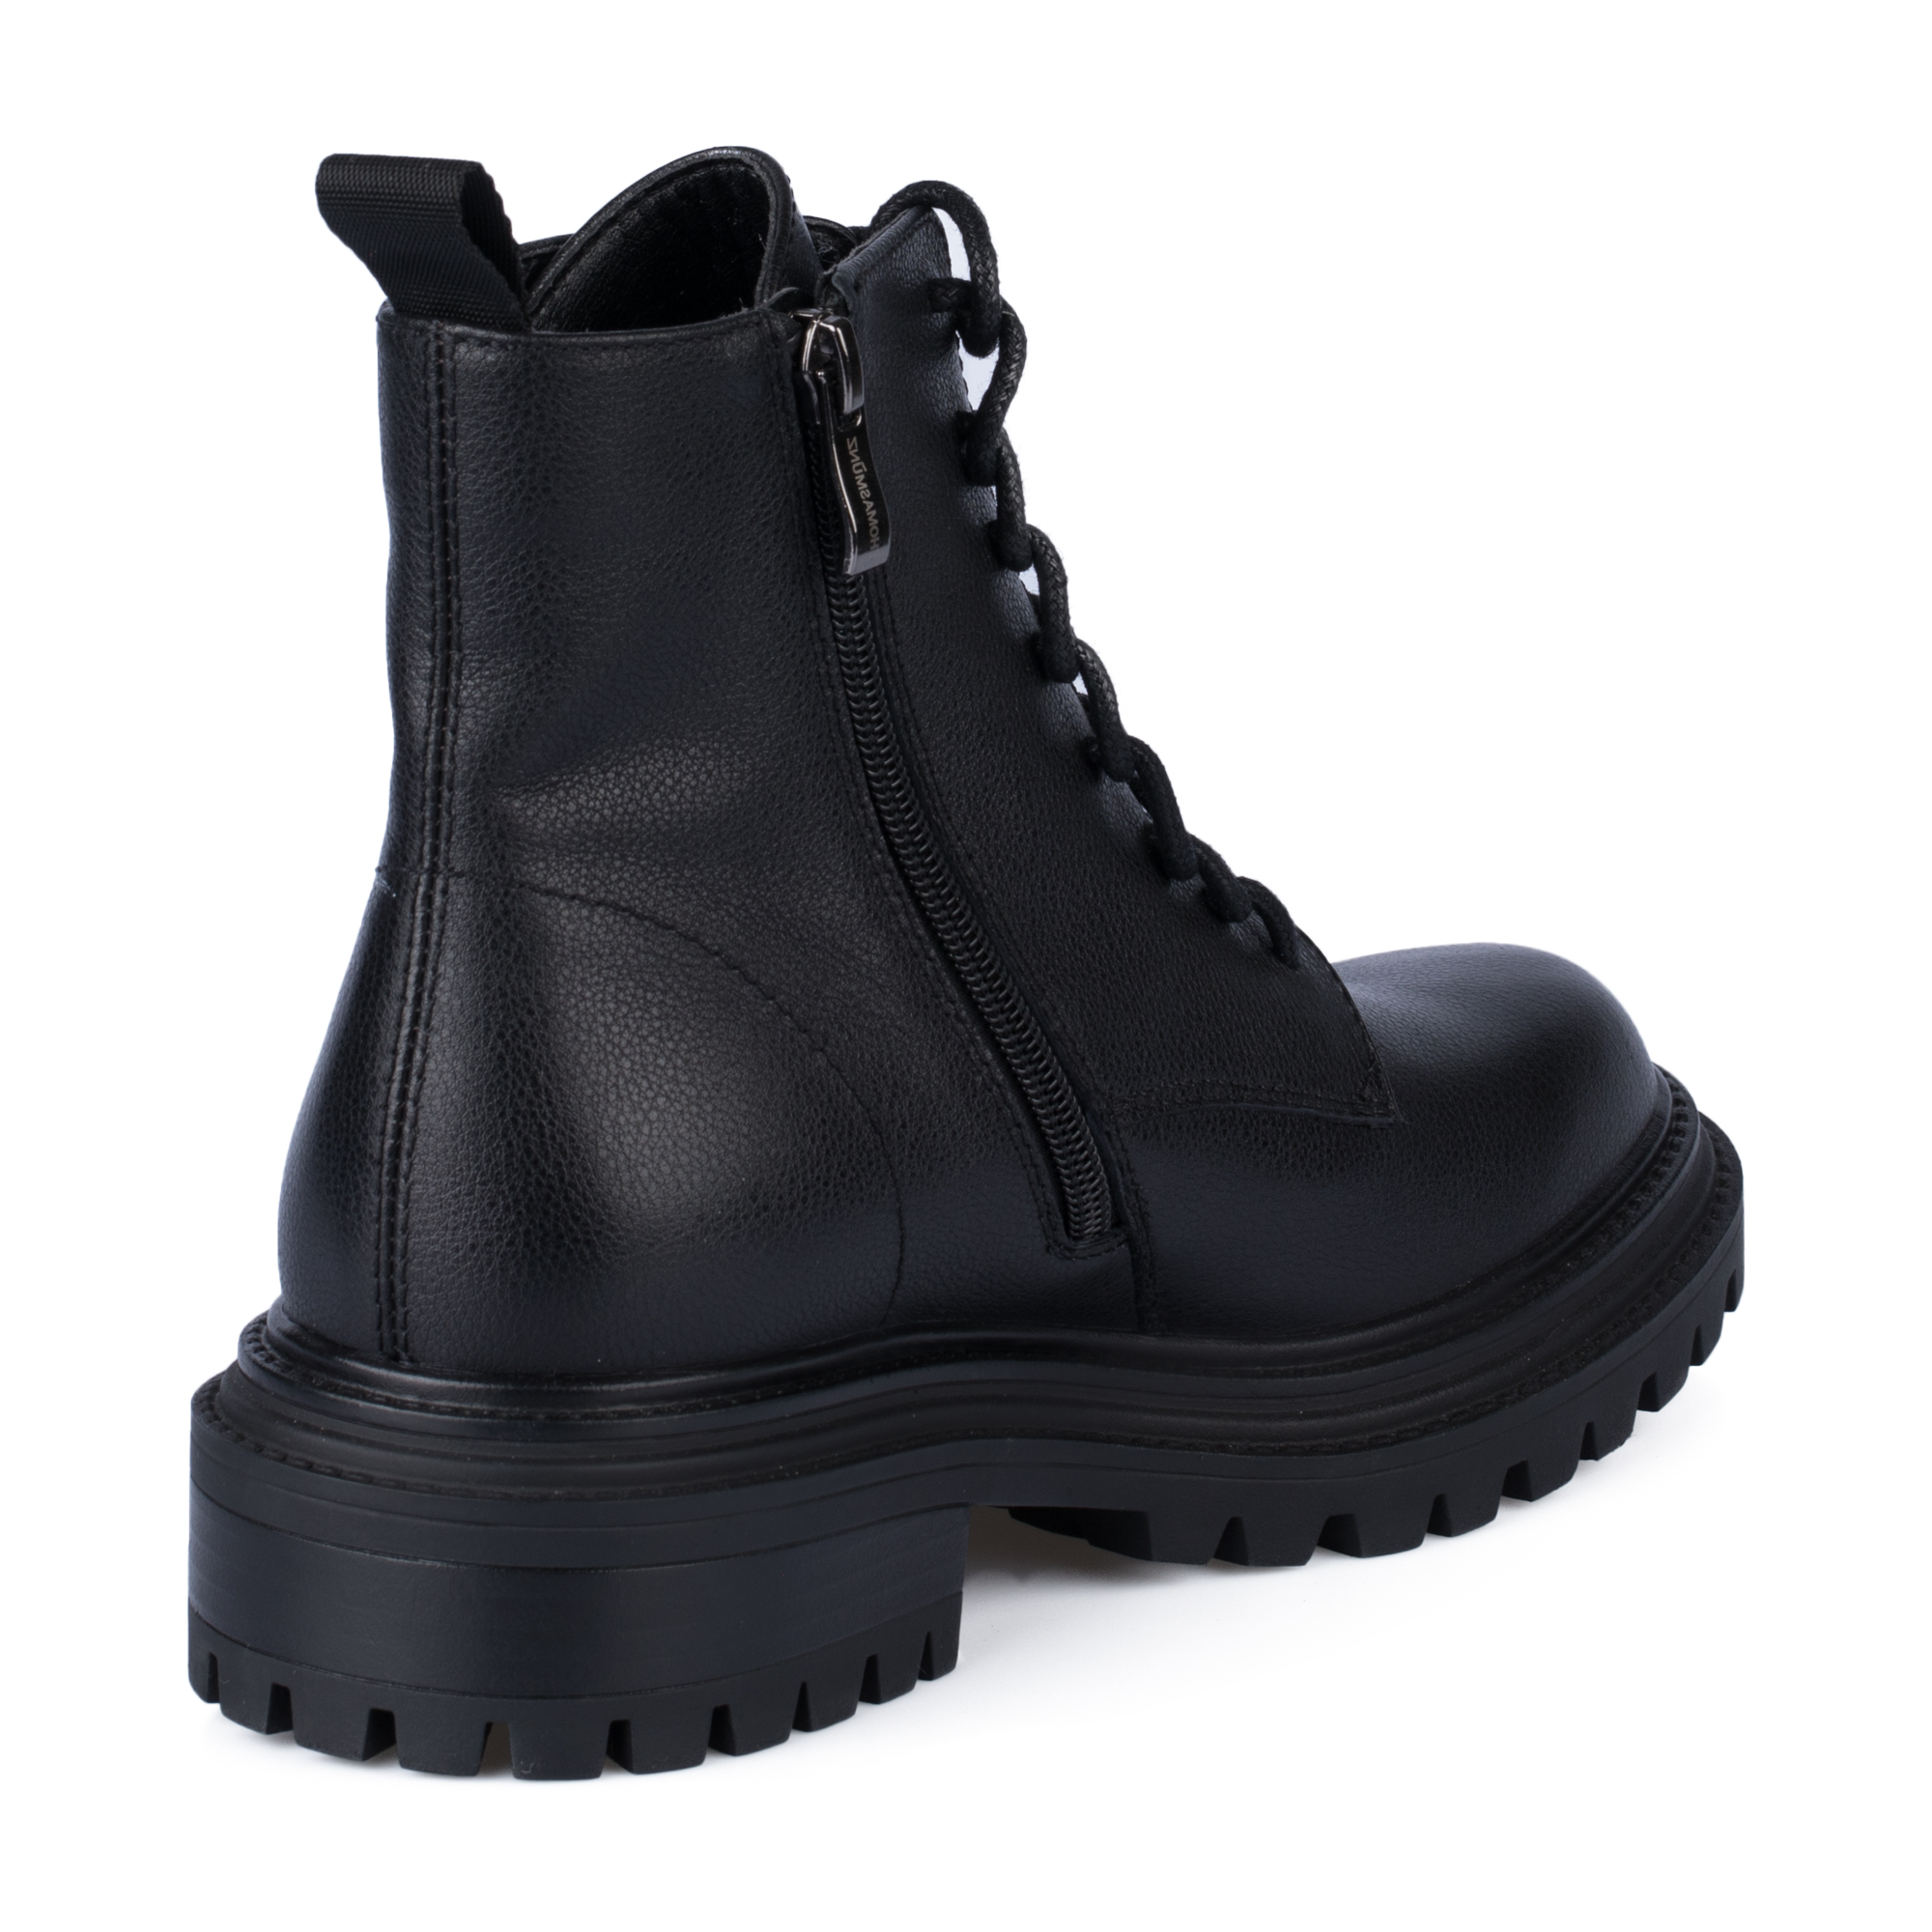 Ботинки Thomas Munz 233-958A-5102, цвет черный, размер 36 - фото 3